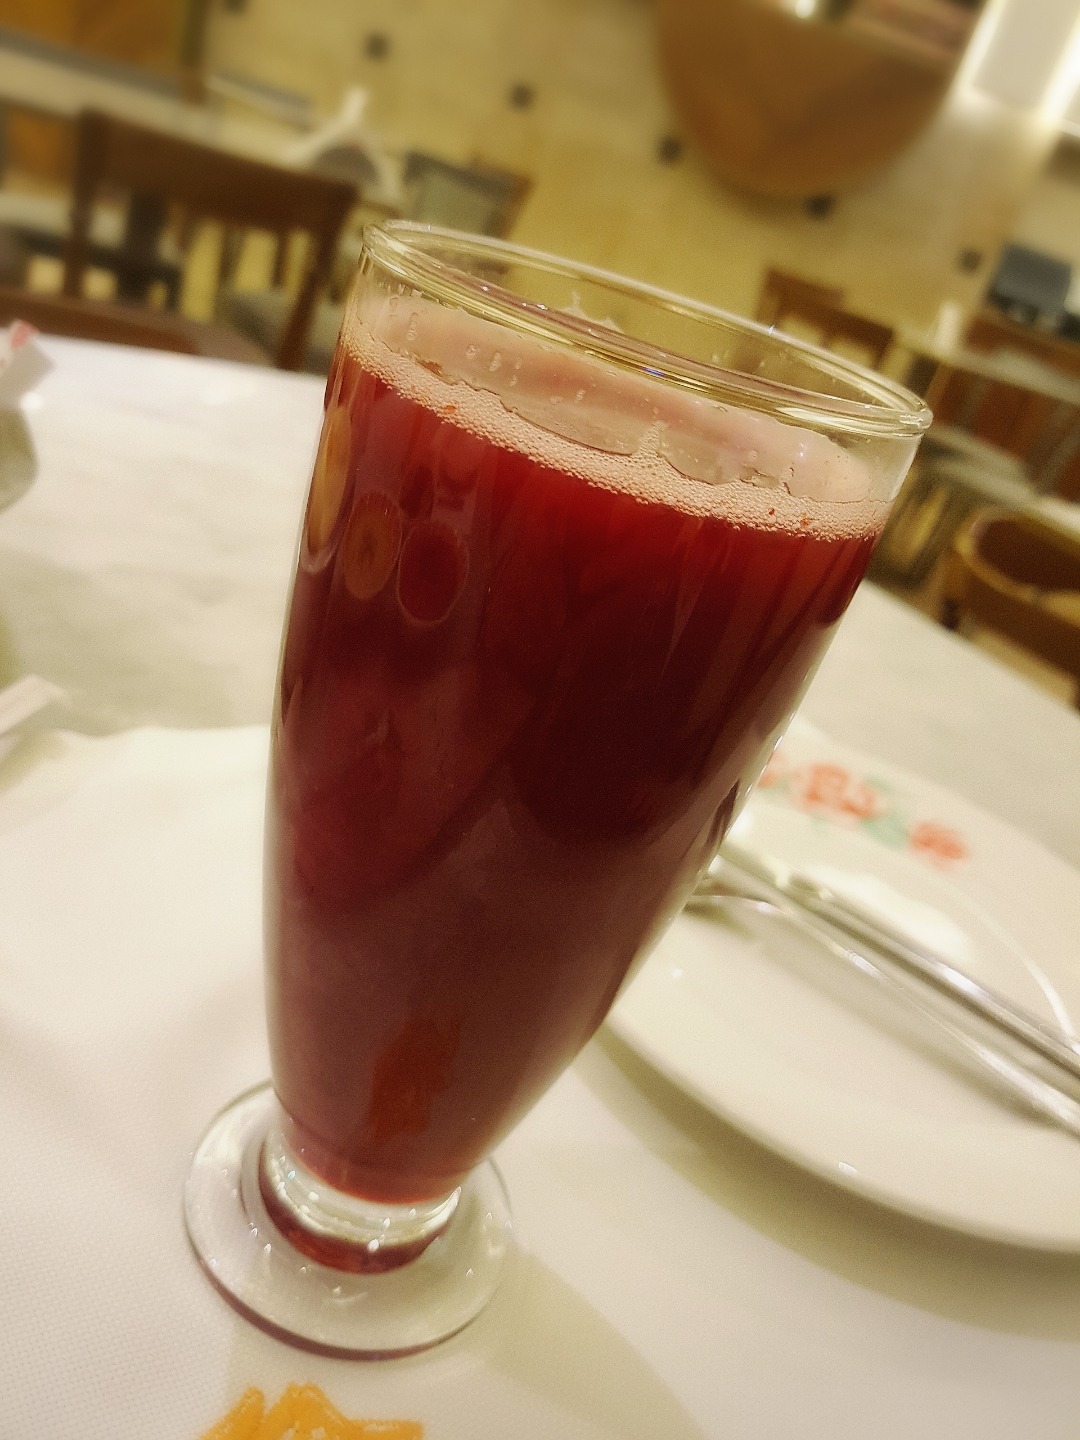 Pomegranate juice @ ليلى من لبنان - البحرين